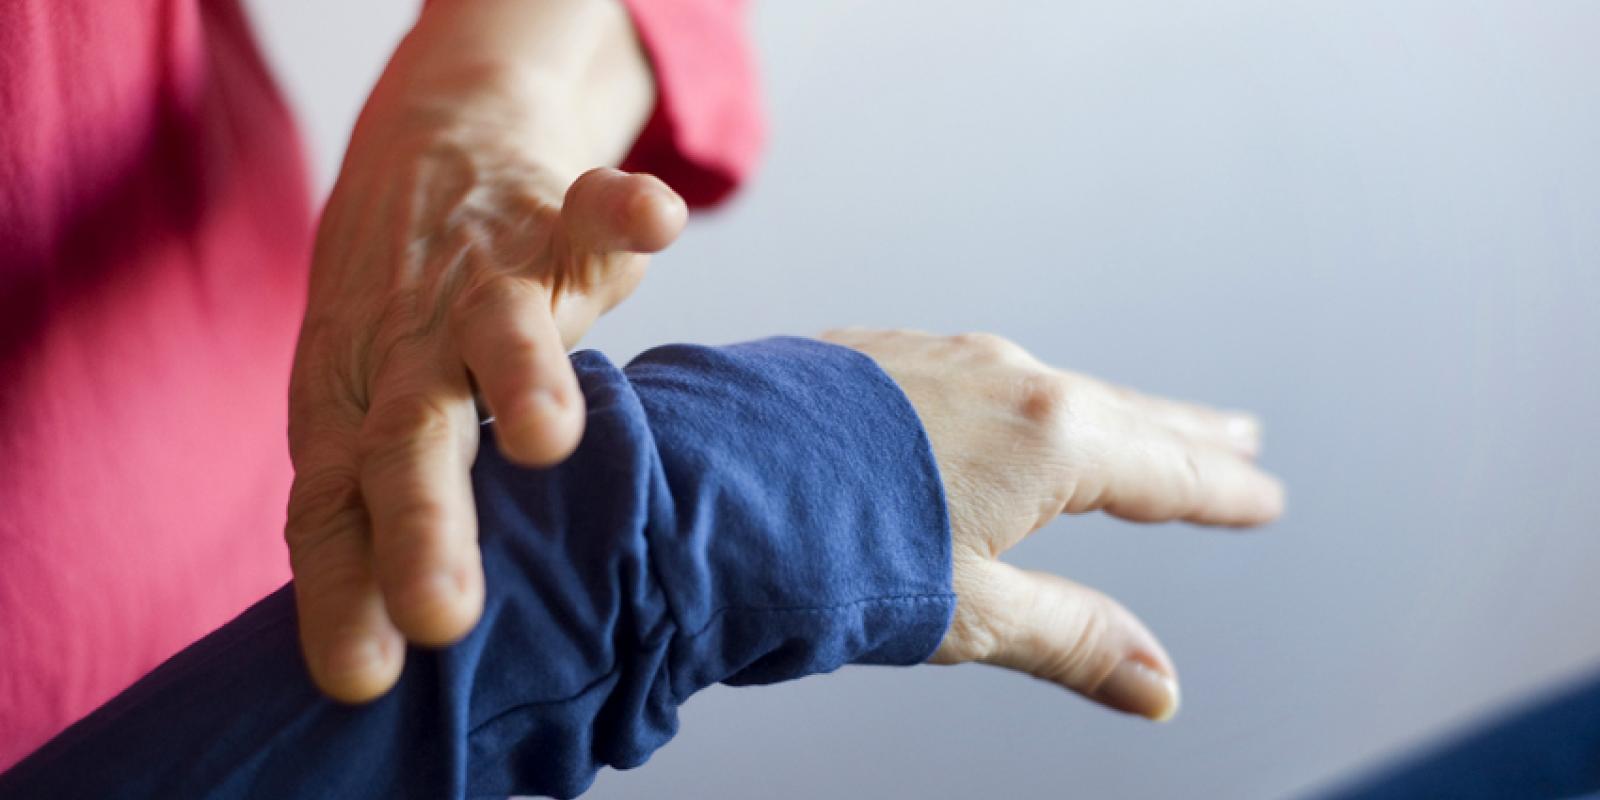 Bilde av en hånd som løfter noen andre sin hånd etter håndleddet